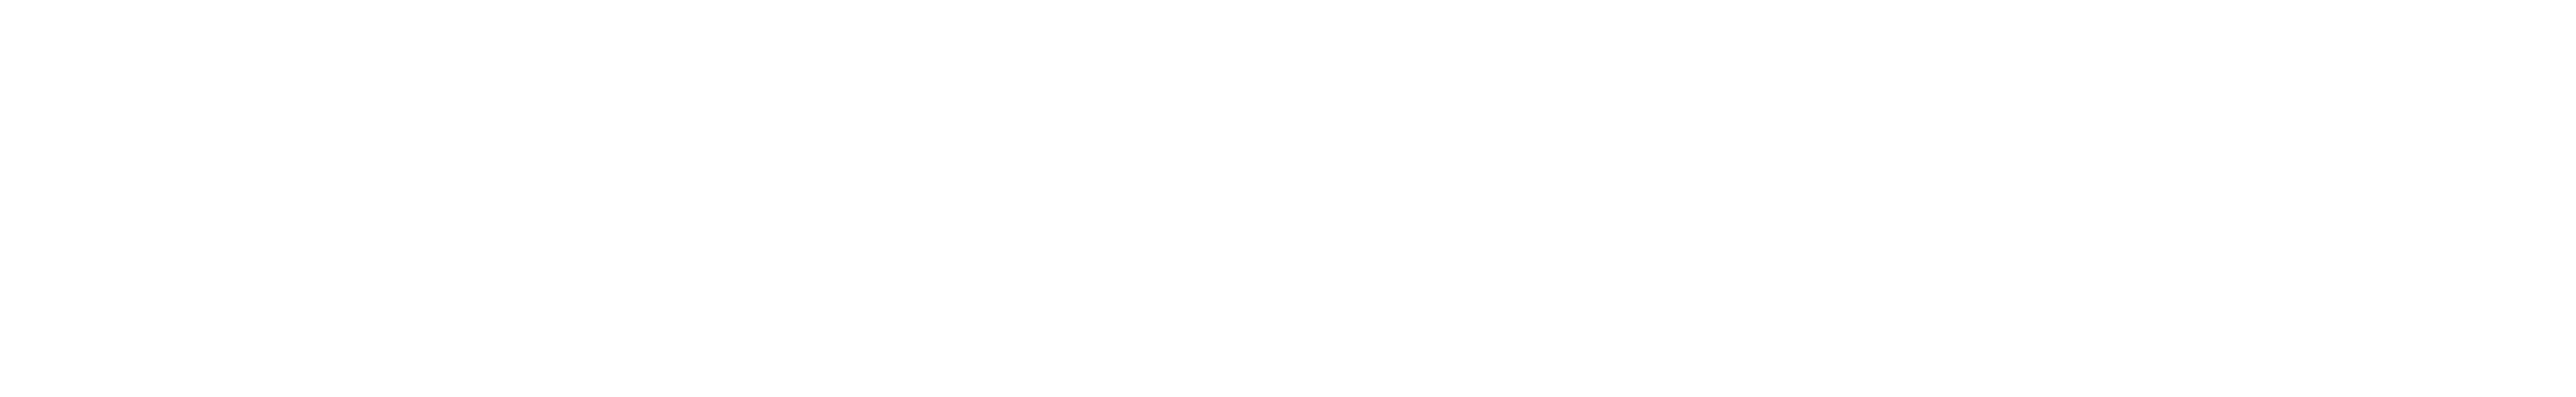 HR Summit Brisbane Logo & ELM Brisbane Logo